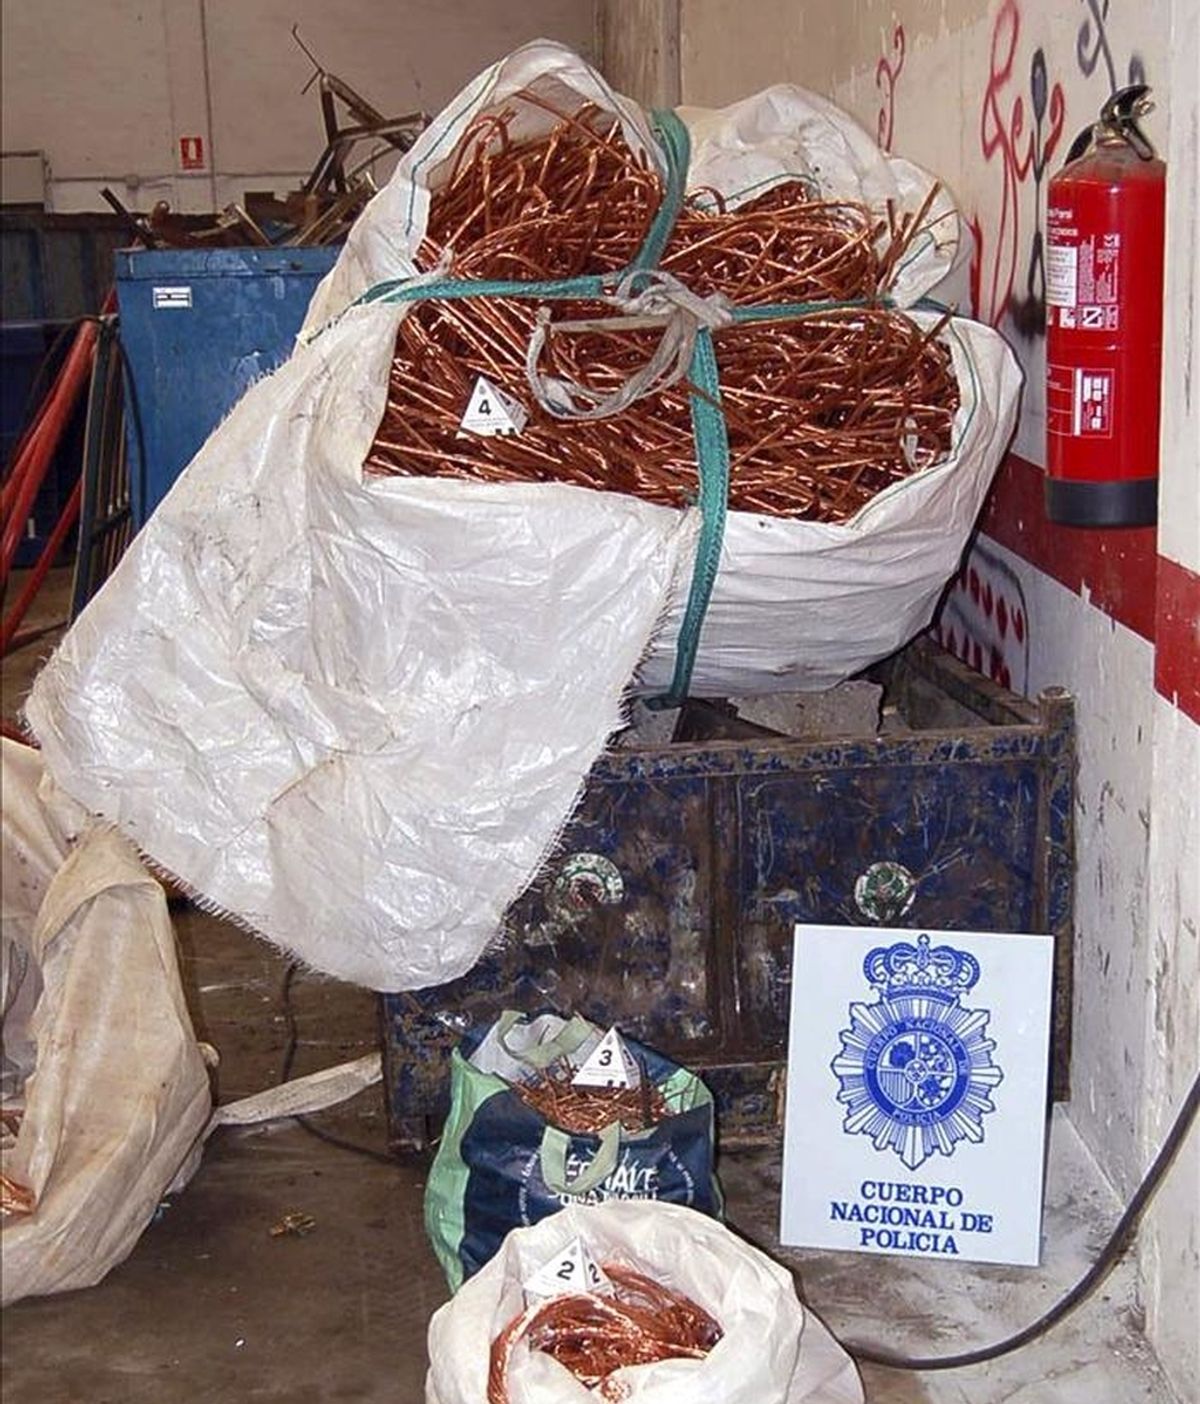 La Guardia Civil ha detenido a cuatro personas por robar, presuntamente, 500 kilos de cable de cobre en el tendido eléctrico del Castillo Mayor de Ayud, en el municipio de Calatayud, y 581 en el subsuelo de Cuarte de Huerva, en la provincia de Zaragoza. En la imagen, vista del cable de cobre incautado. EFE